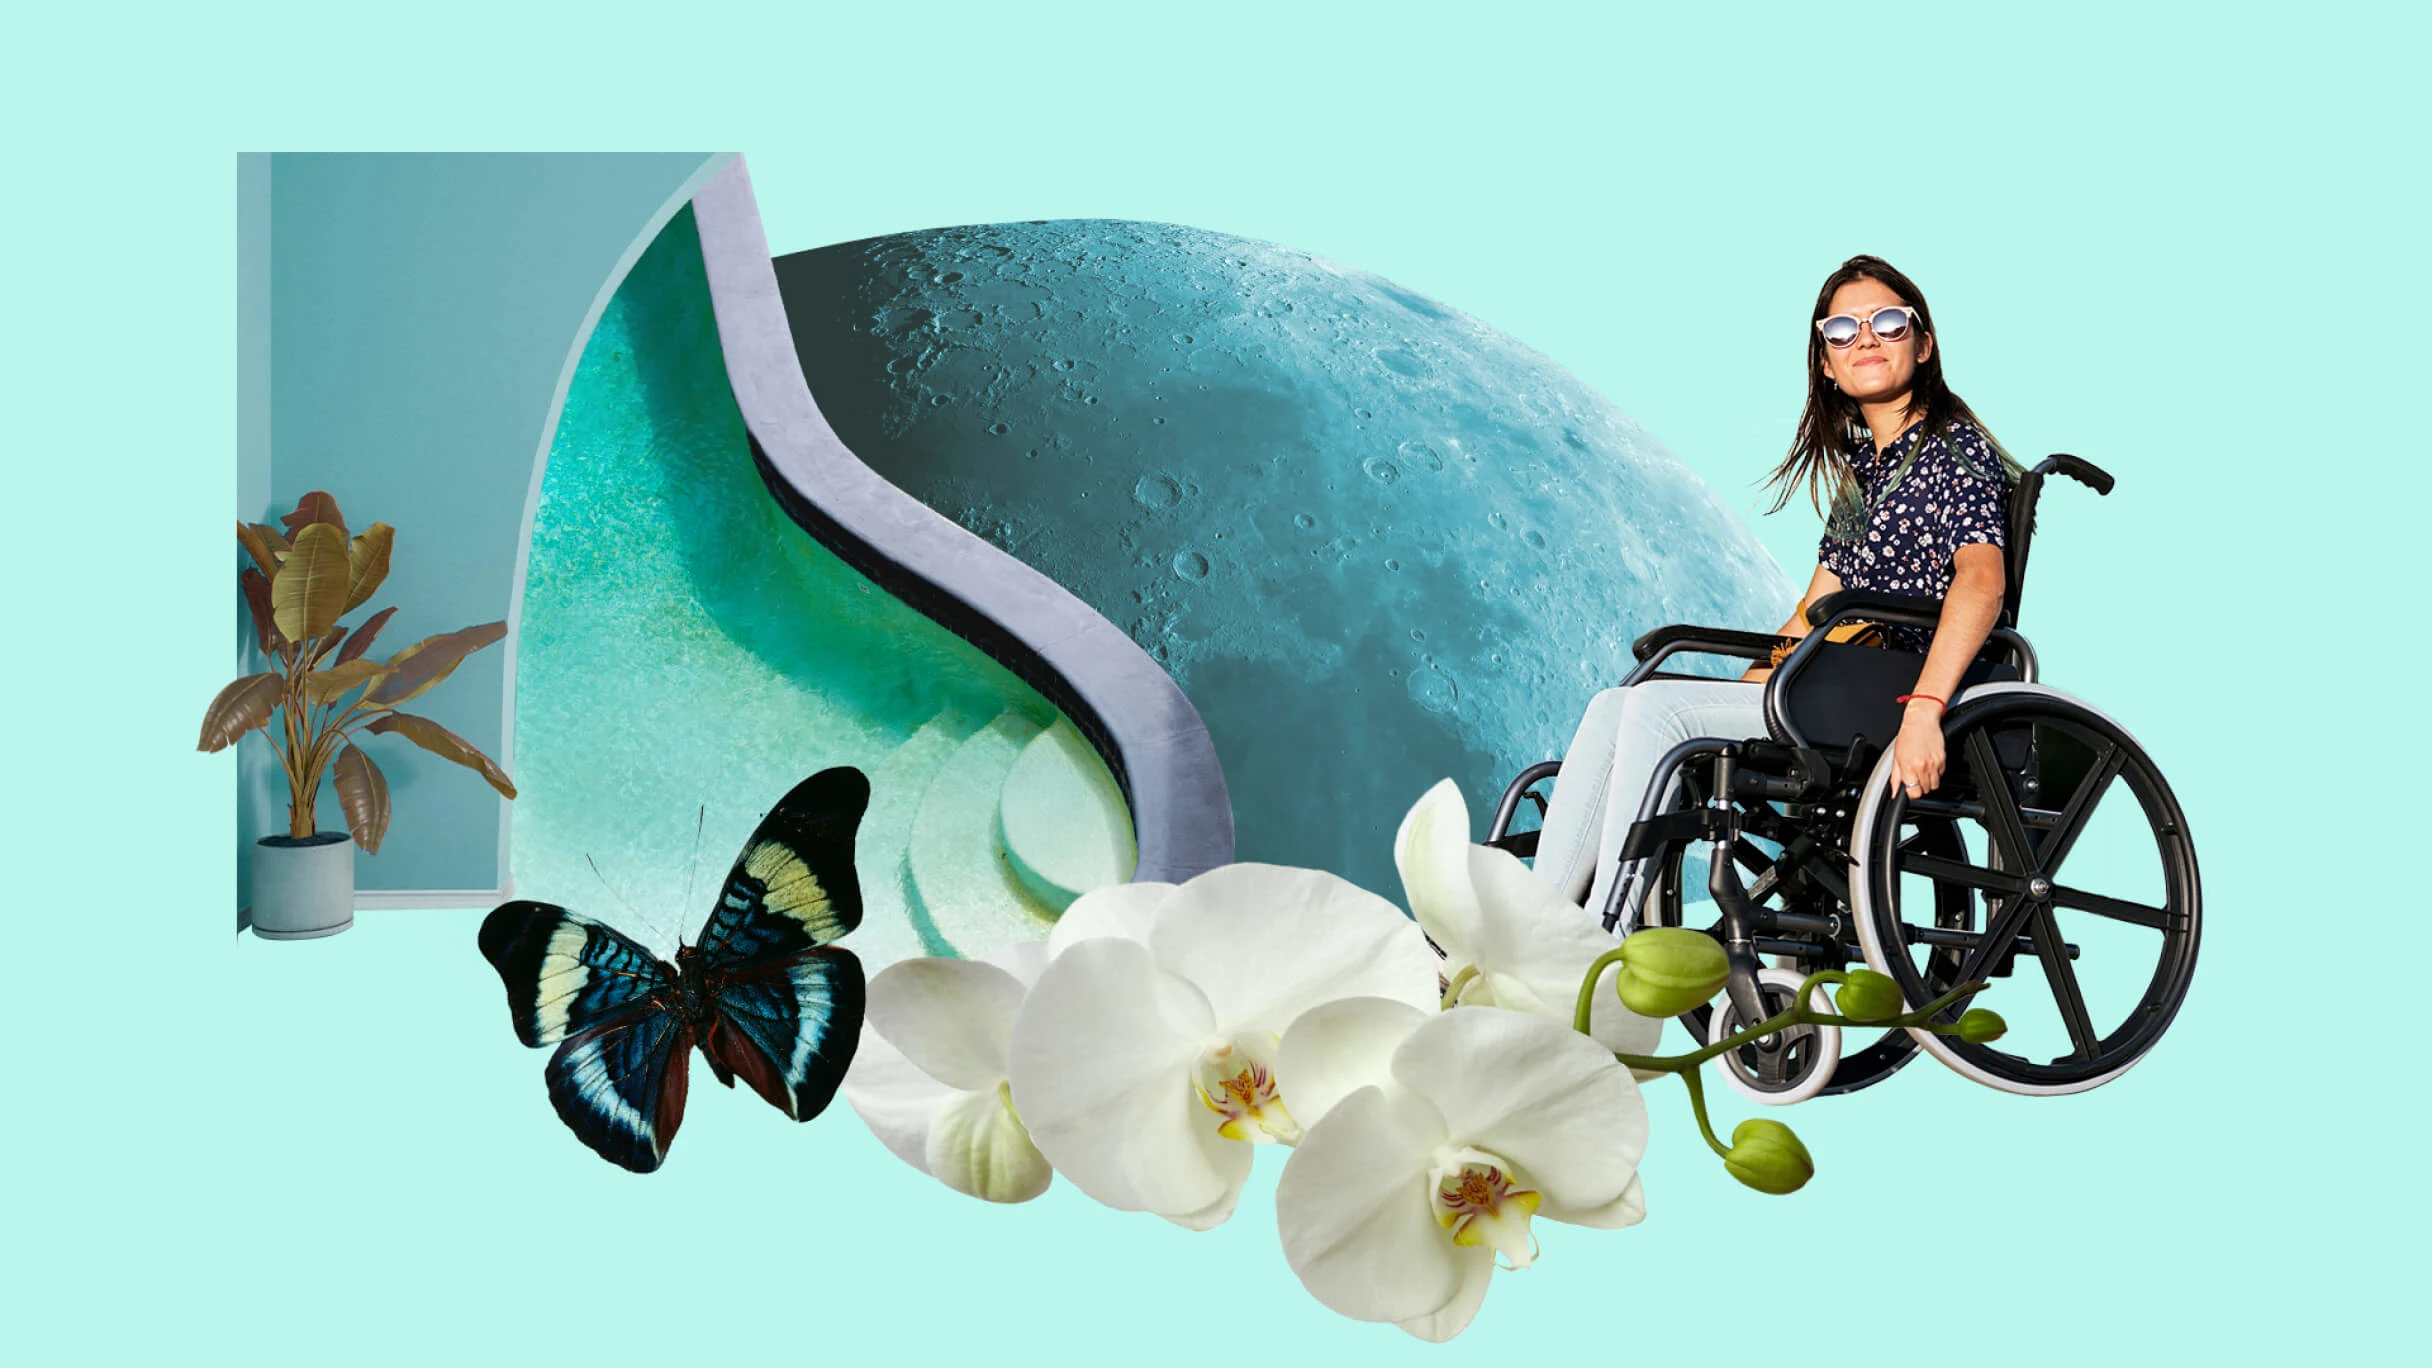 Μια λευκή γυναίκα με γυαλιά ηλίου κάθεται σε αναπηρικό καροτσάκι. Η επιφάνεια του φεγγαριού σε γαλάζια απόχρωση. Μια μαύρη και μπλε πεταλούδα πετά δίπλα σε λευκές ορχιδέες. Ένα πράσινο φυτό στέκεται στη γωνία του δωματίου δίπλα σε μια πισίνα με καμπύλη. 